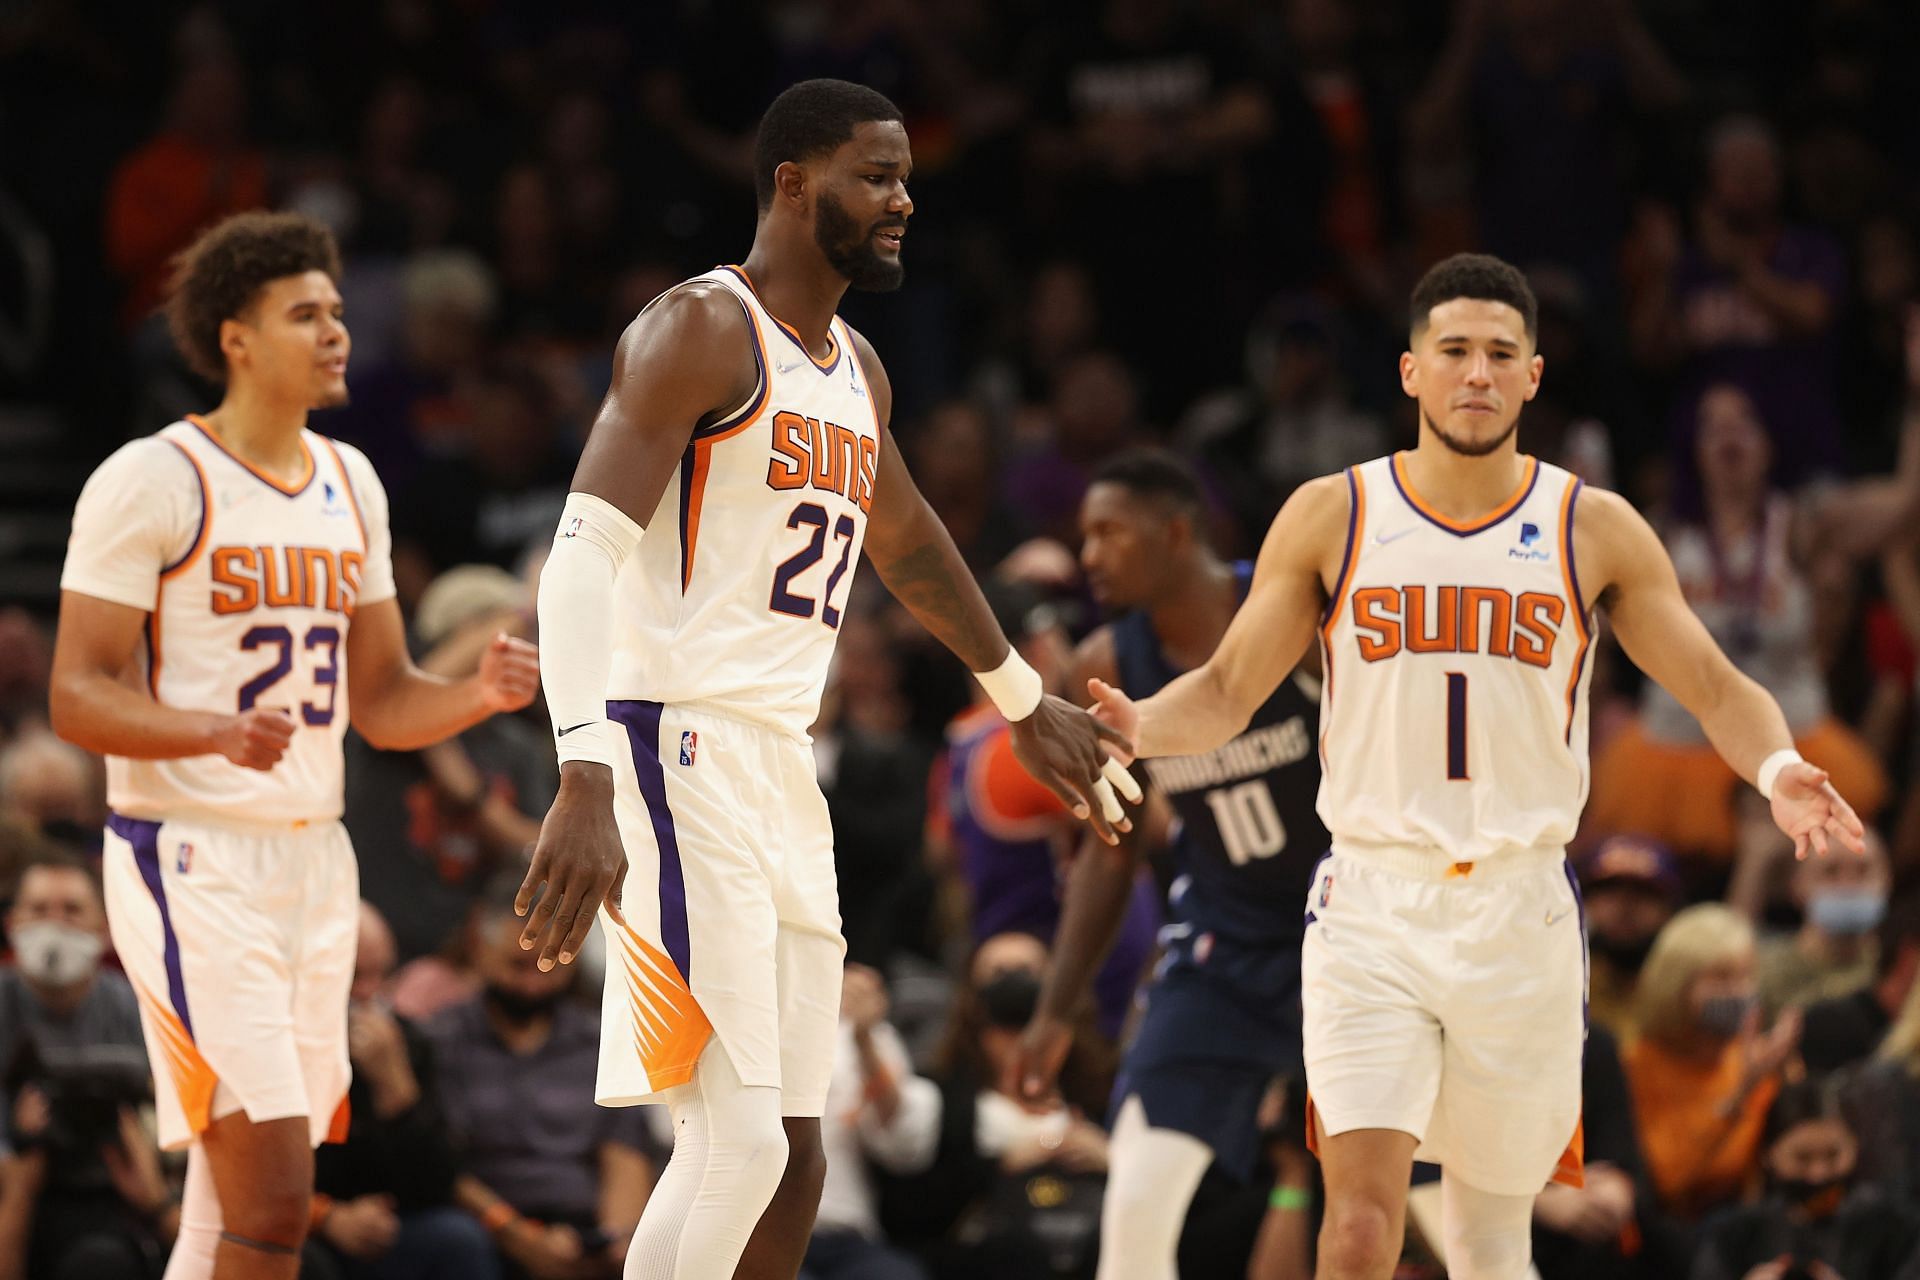 Phoenix Suns extend their winning streak to 15 games